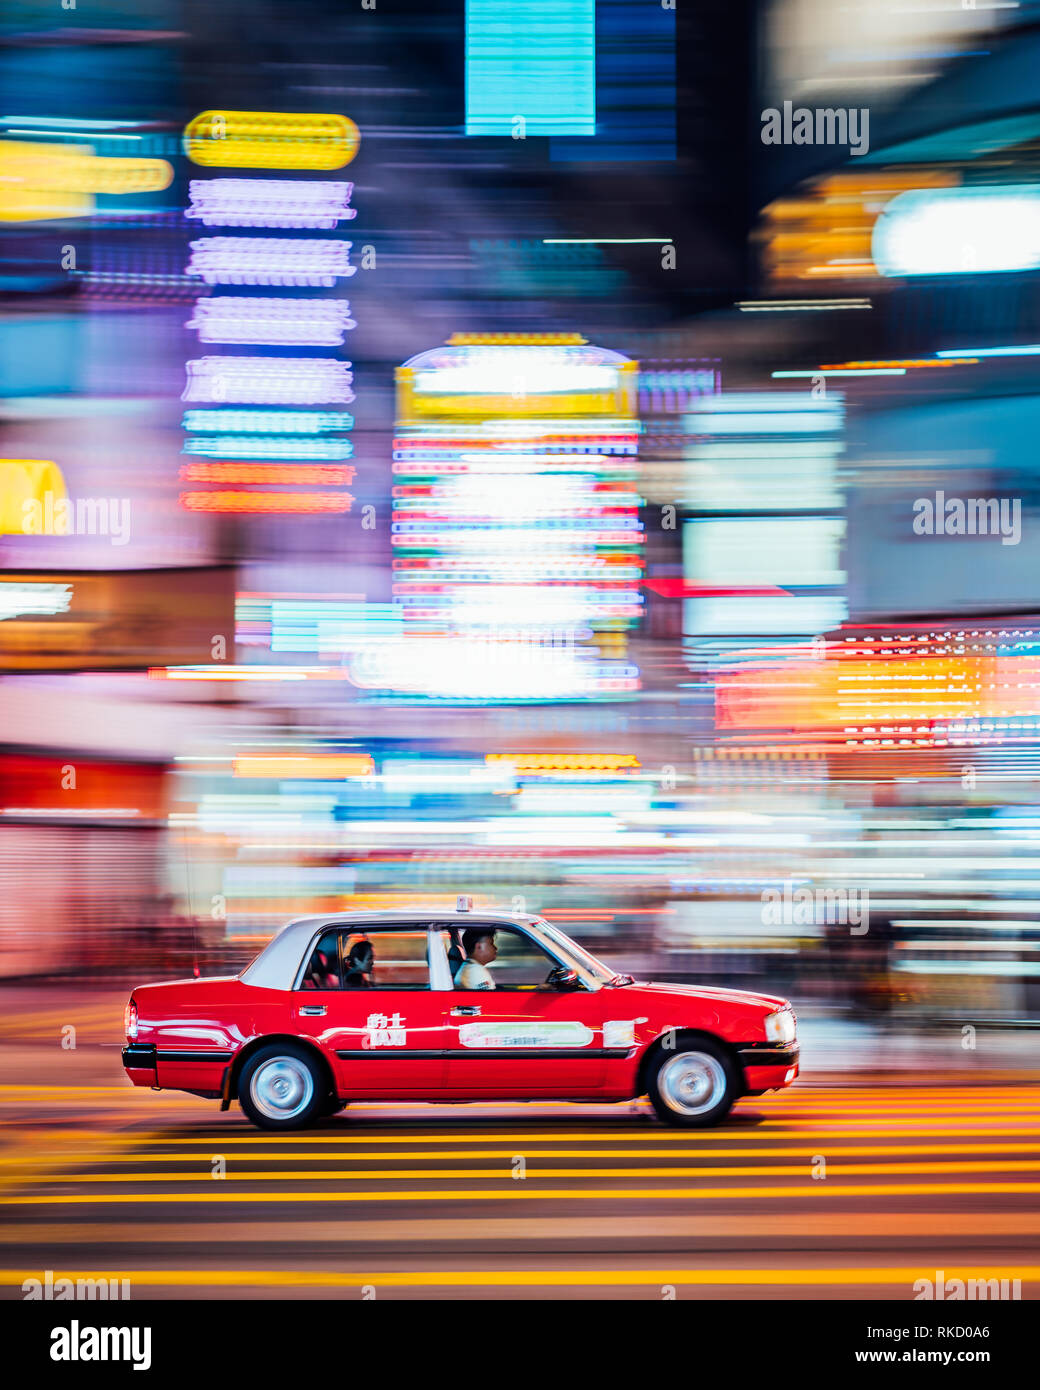 Las luces de neón son vibrantes en todo Hong Kong, un taxi rojo de velocidades mediante una intersección en Kowloon, Hong Kong. Los taxis son una manera asequible de conmutar. Foto de stock